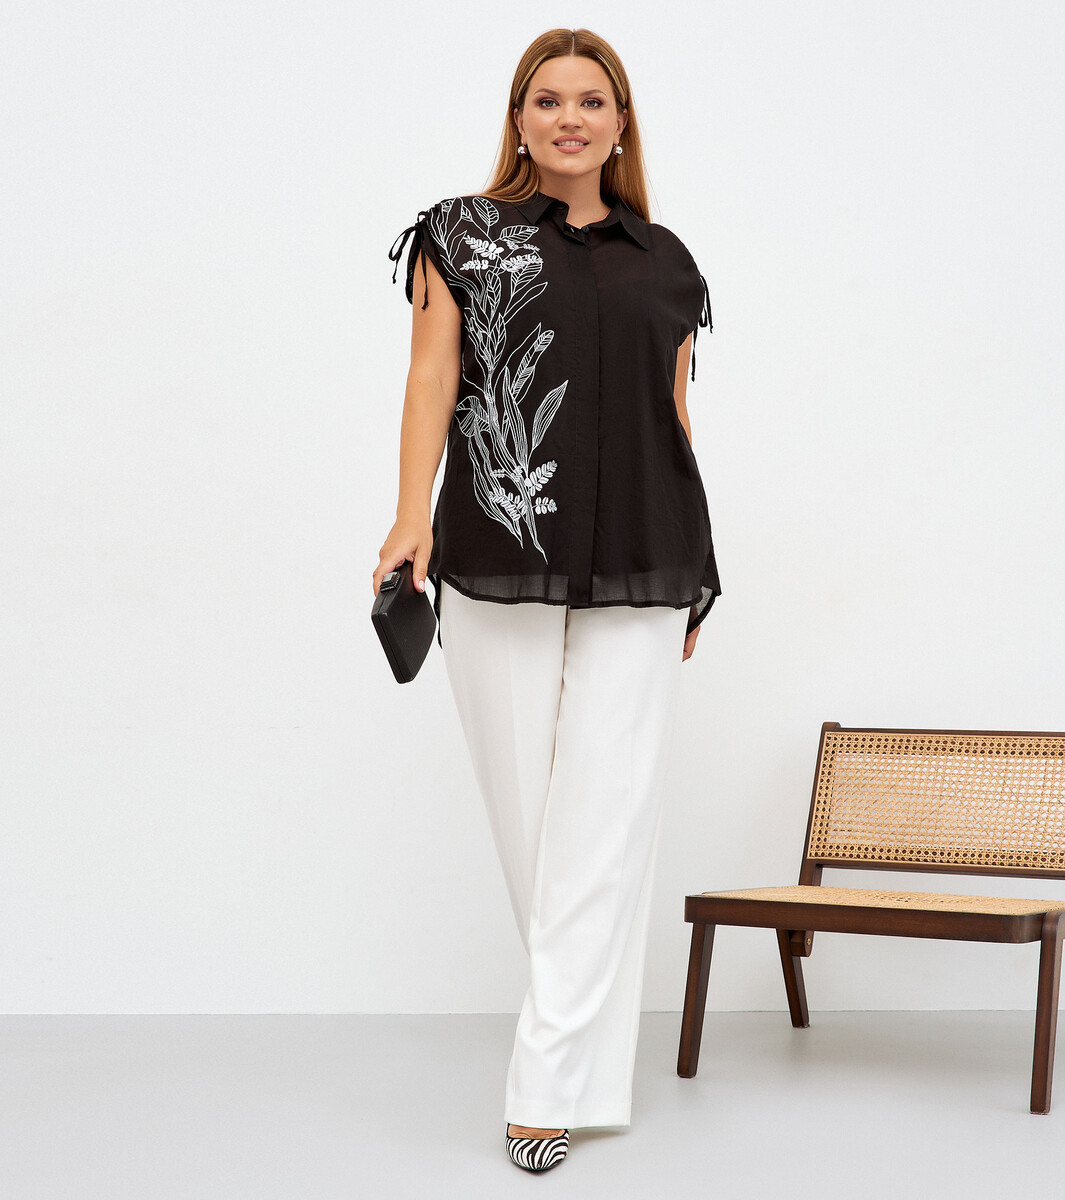 Комплект женский (туника, блузка) PANDA, размер 48, цвет черный 01182633 - фото 1